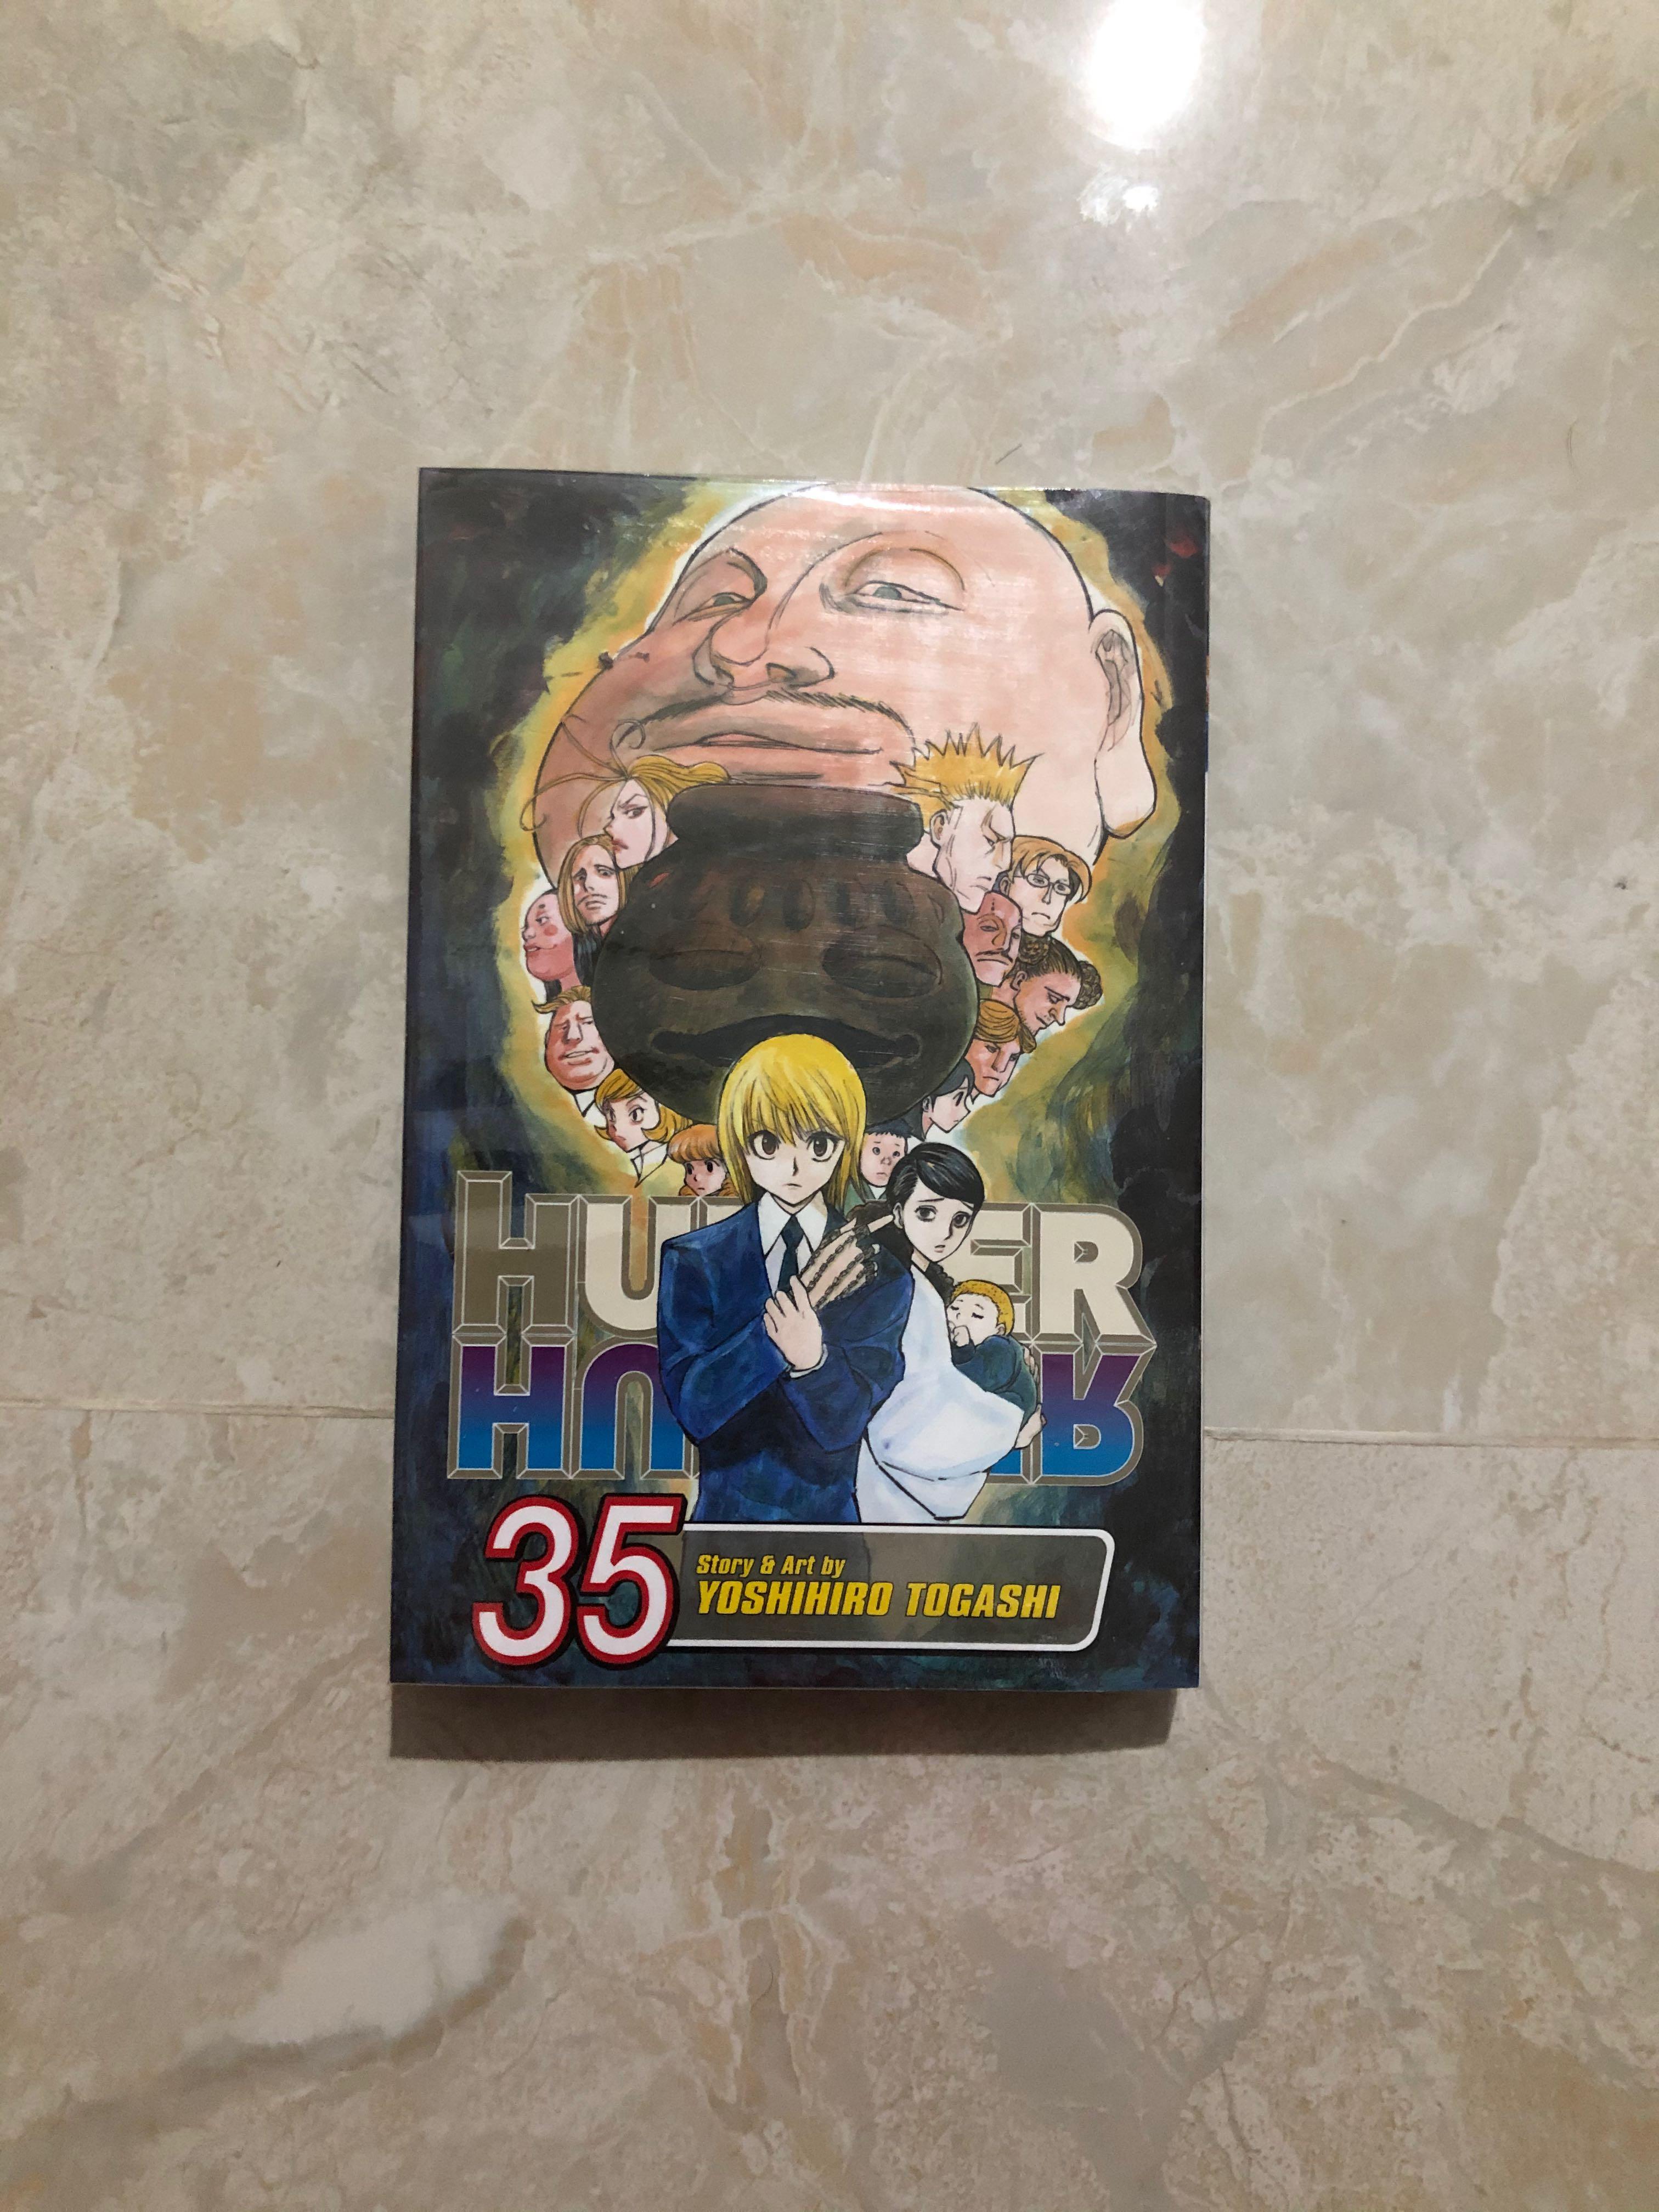 Hunter X Hunter Manga Vol 35 Books Stationery Comics Manga On Carousell